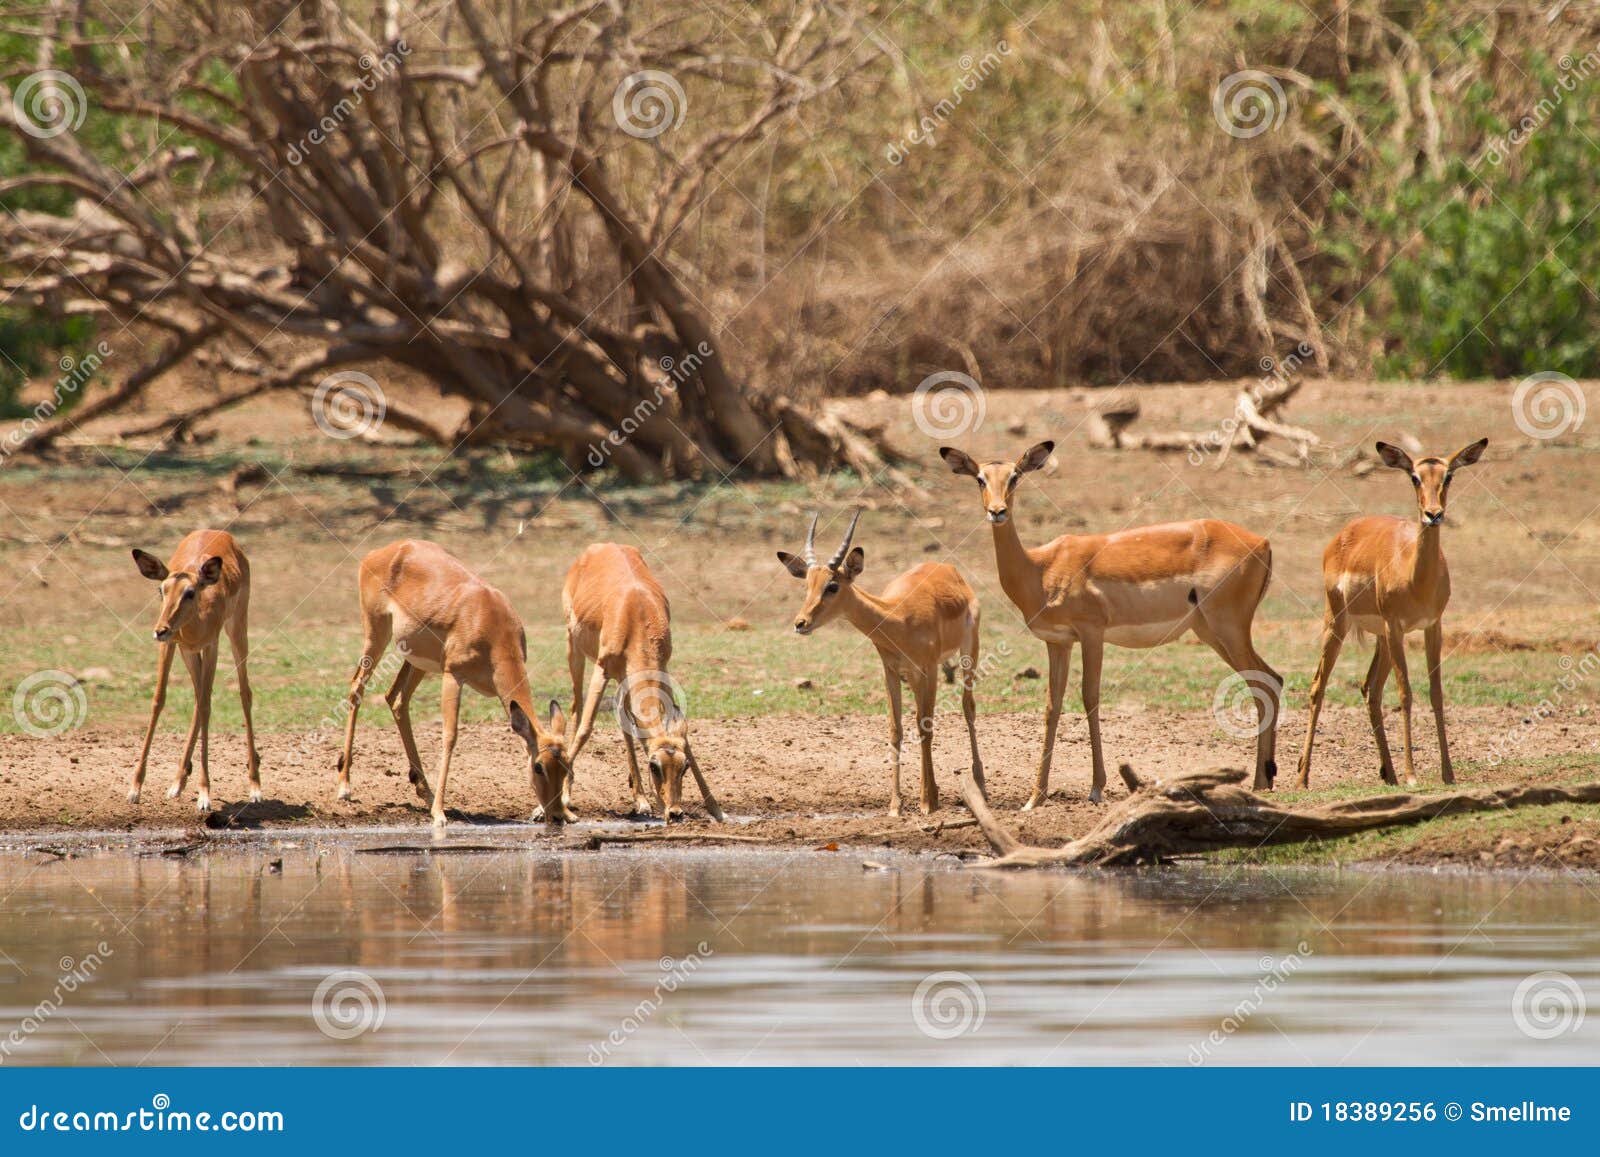 impala gazelle